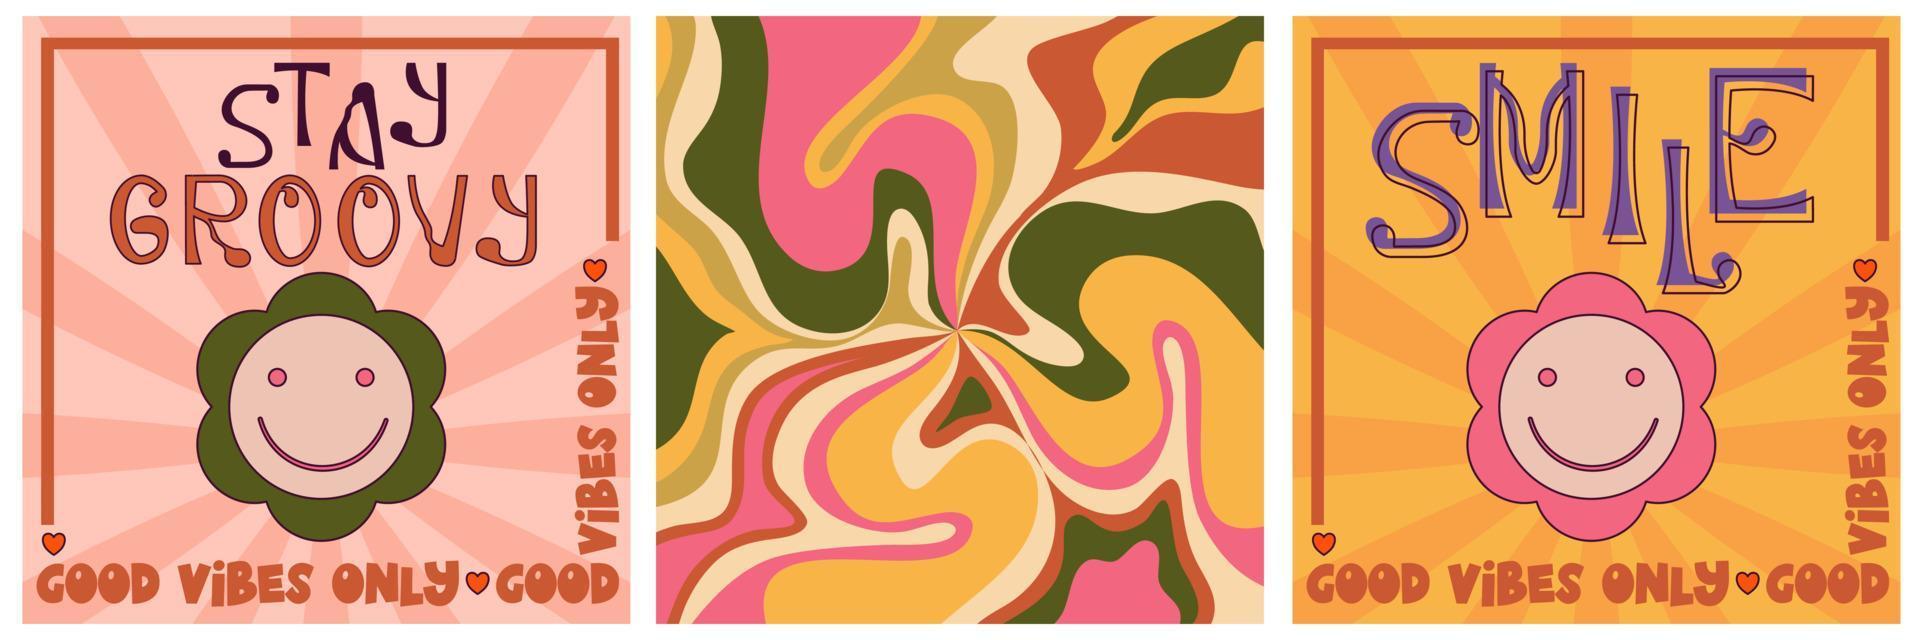 Retro-Groovy-Poster-Set, Hippie-Design der 70er Jahre. modernes grooviges Poster mit Blume und Welle. Retro 60er 70er psychedelisches Muster. Vintage Blumenhintergrund vektor